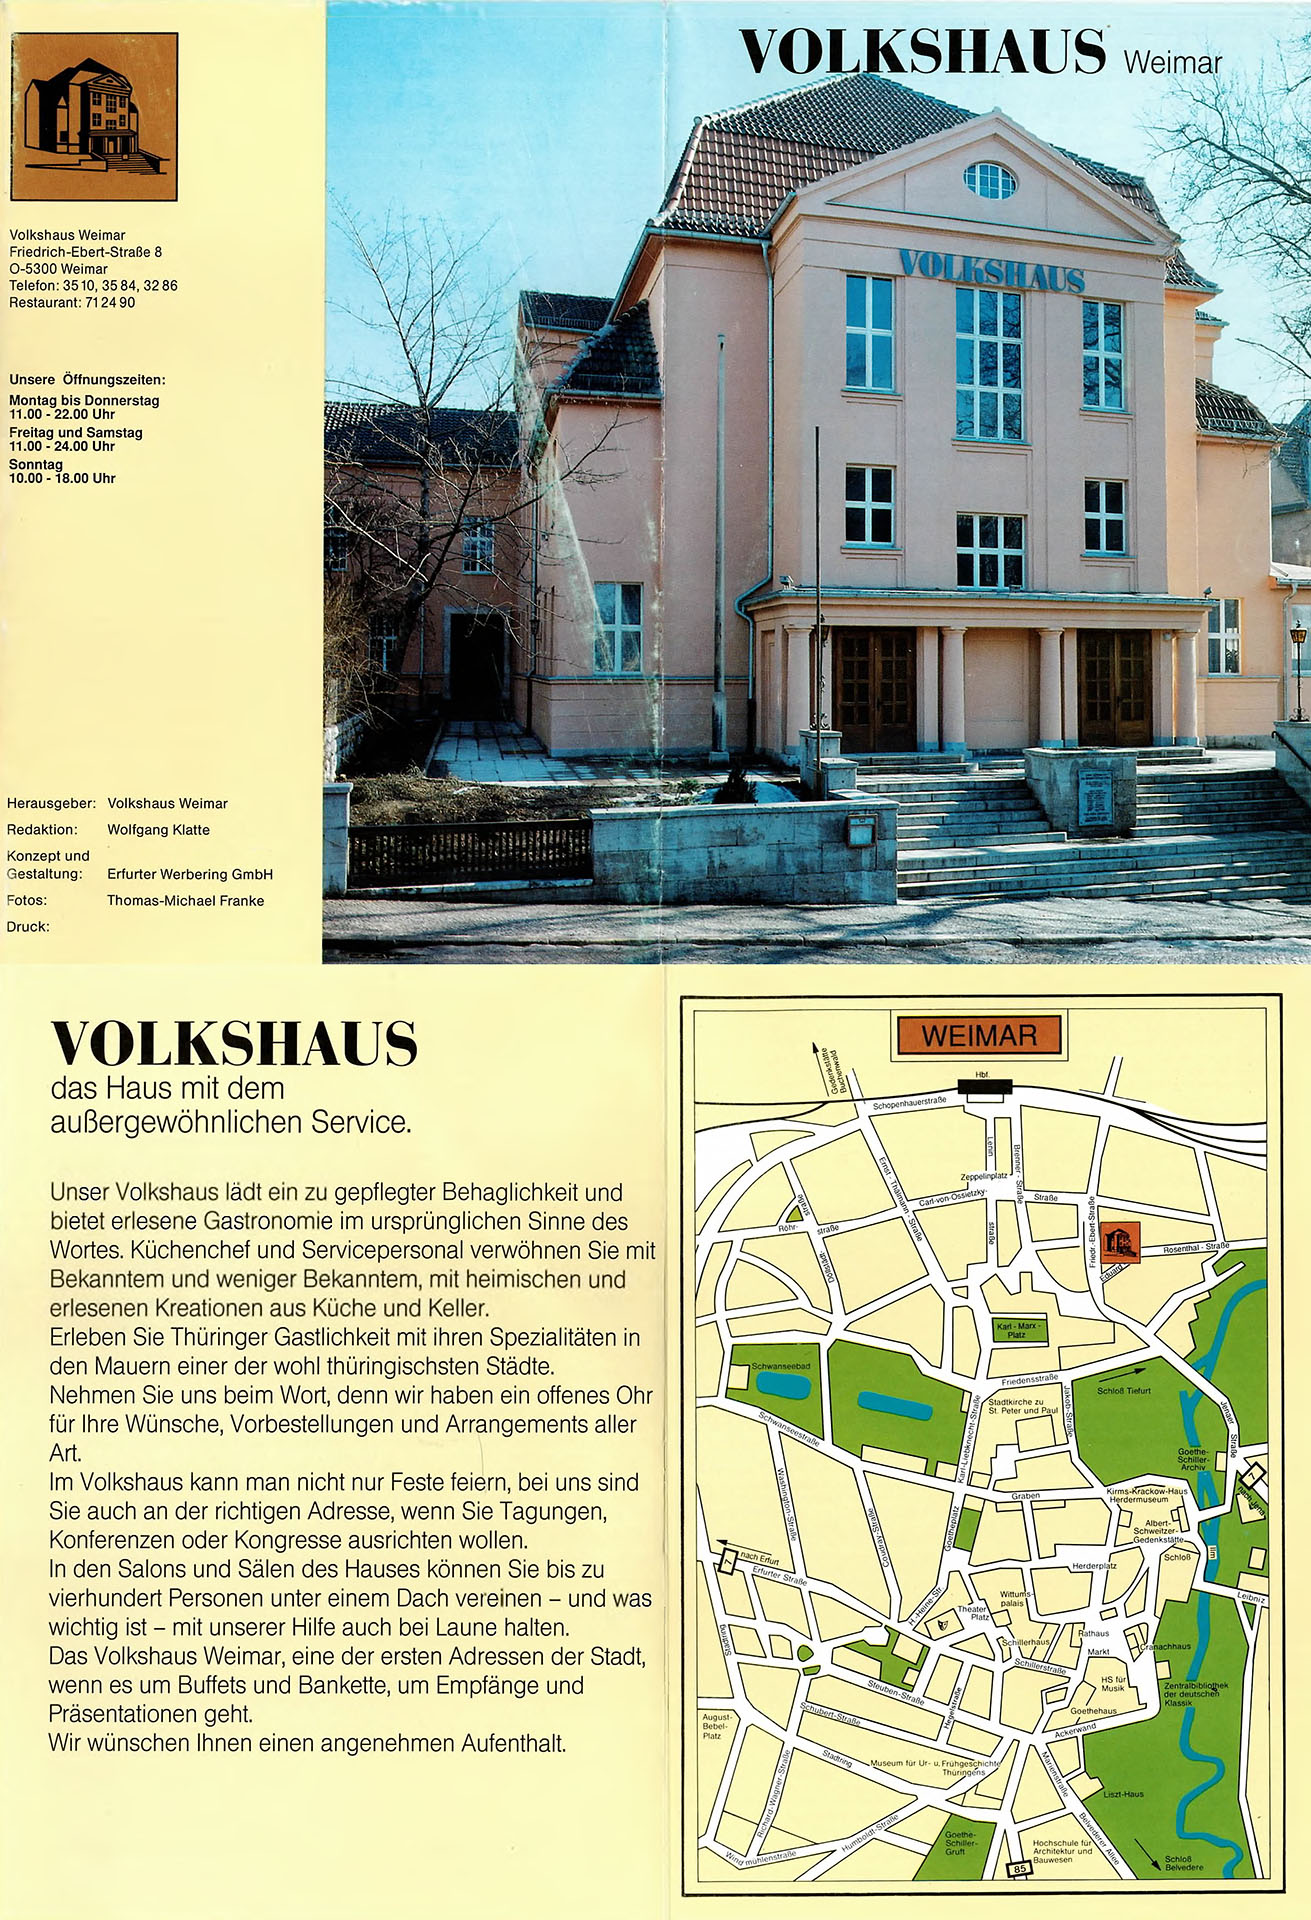 Volkshaus Weimar